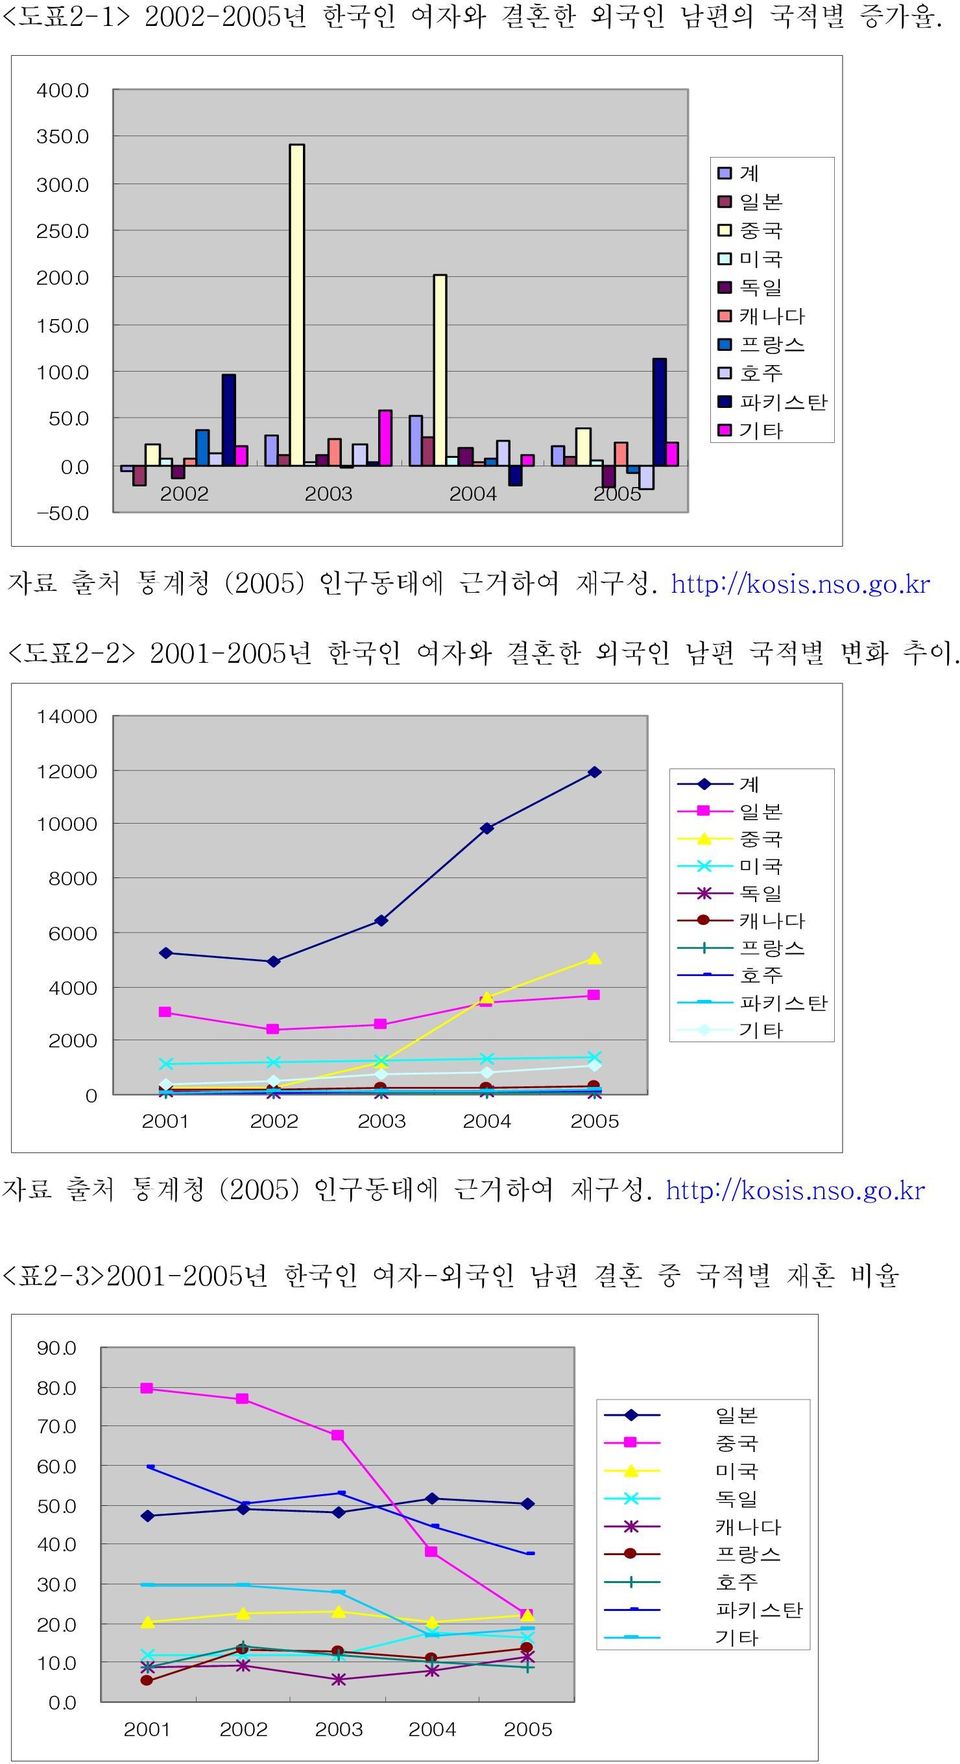 kr <도표2-2> 2001-2005년 한국인 여자와 결혼한 외국인 남편 국적별 변화 추이.